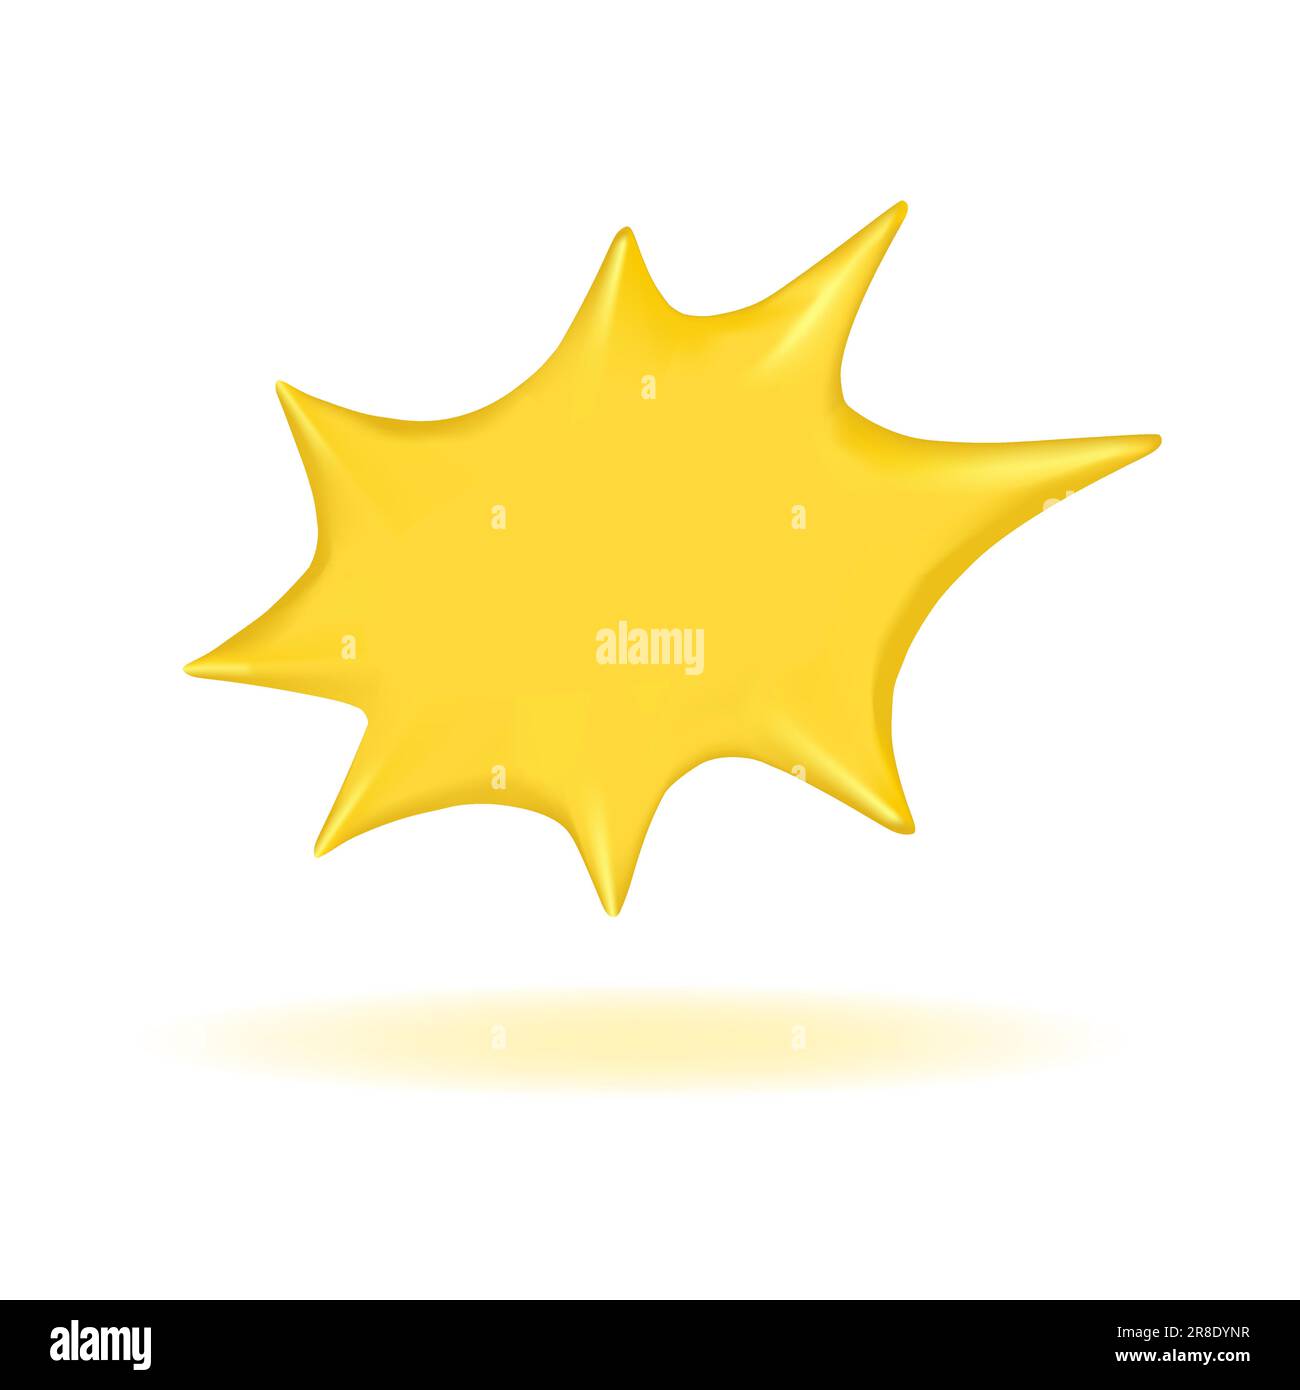 Brillante 3D render burbuja de discurso retro de color amarillo o dorado, forma de estrella, sombra por debajo. Palabra, pensamiento, susurro, emoción. Elemento aislado editable Ilustración del Vector